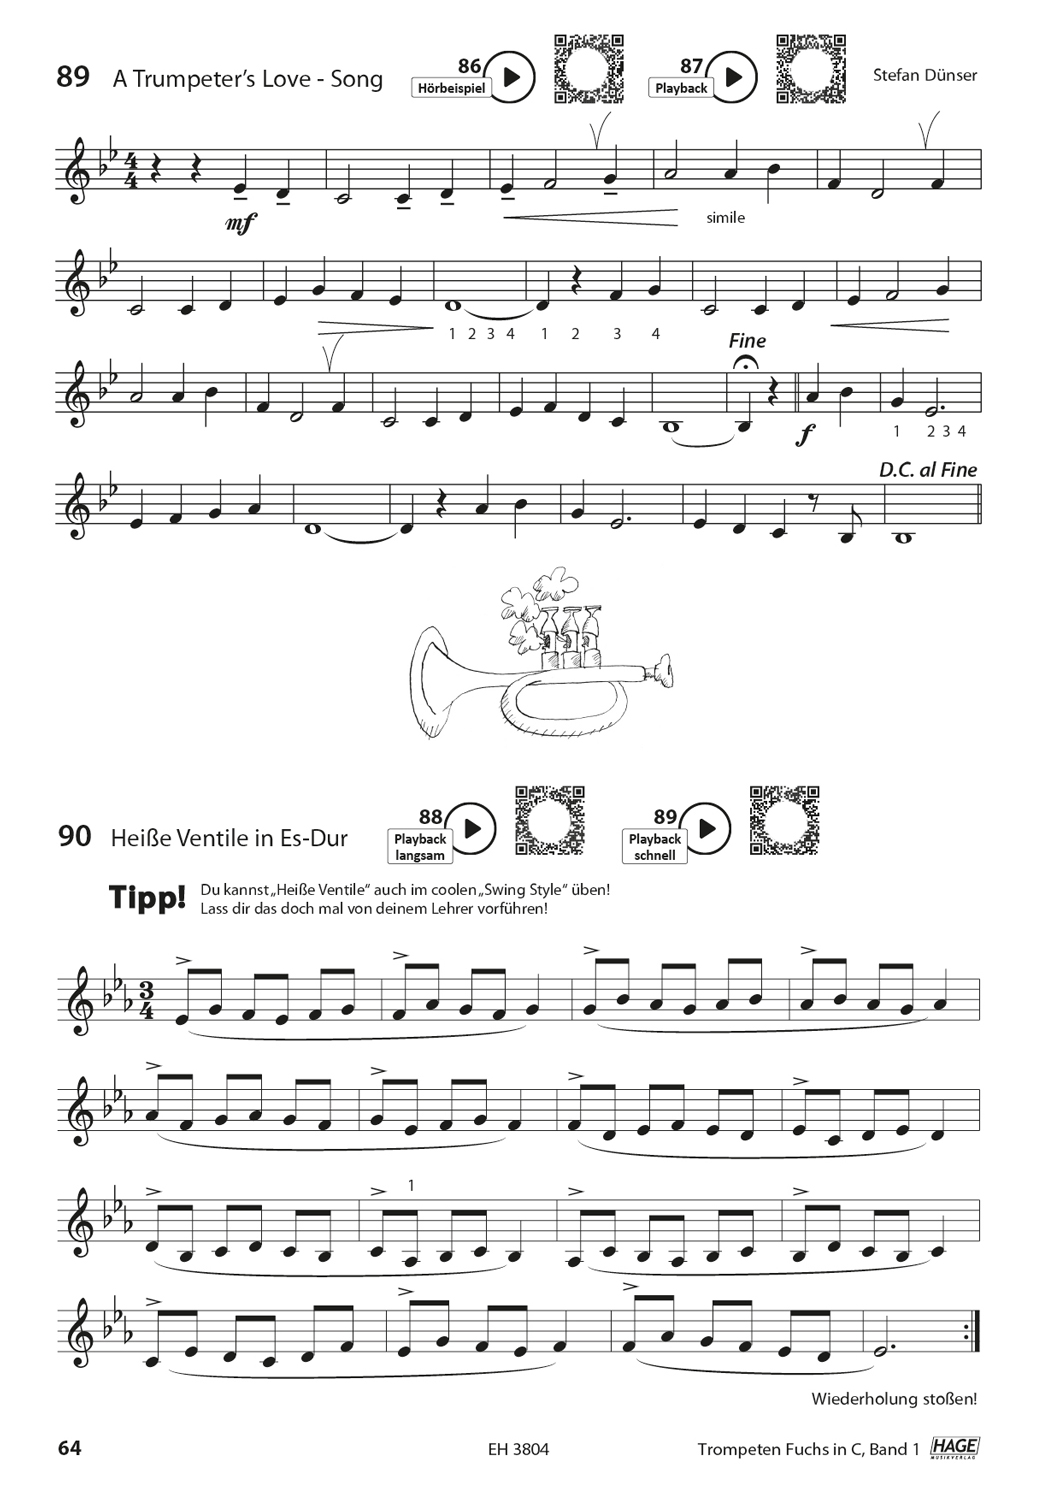 Trompeten Fuchs Band 1 in C für Posaunenchor Seiten 8